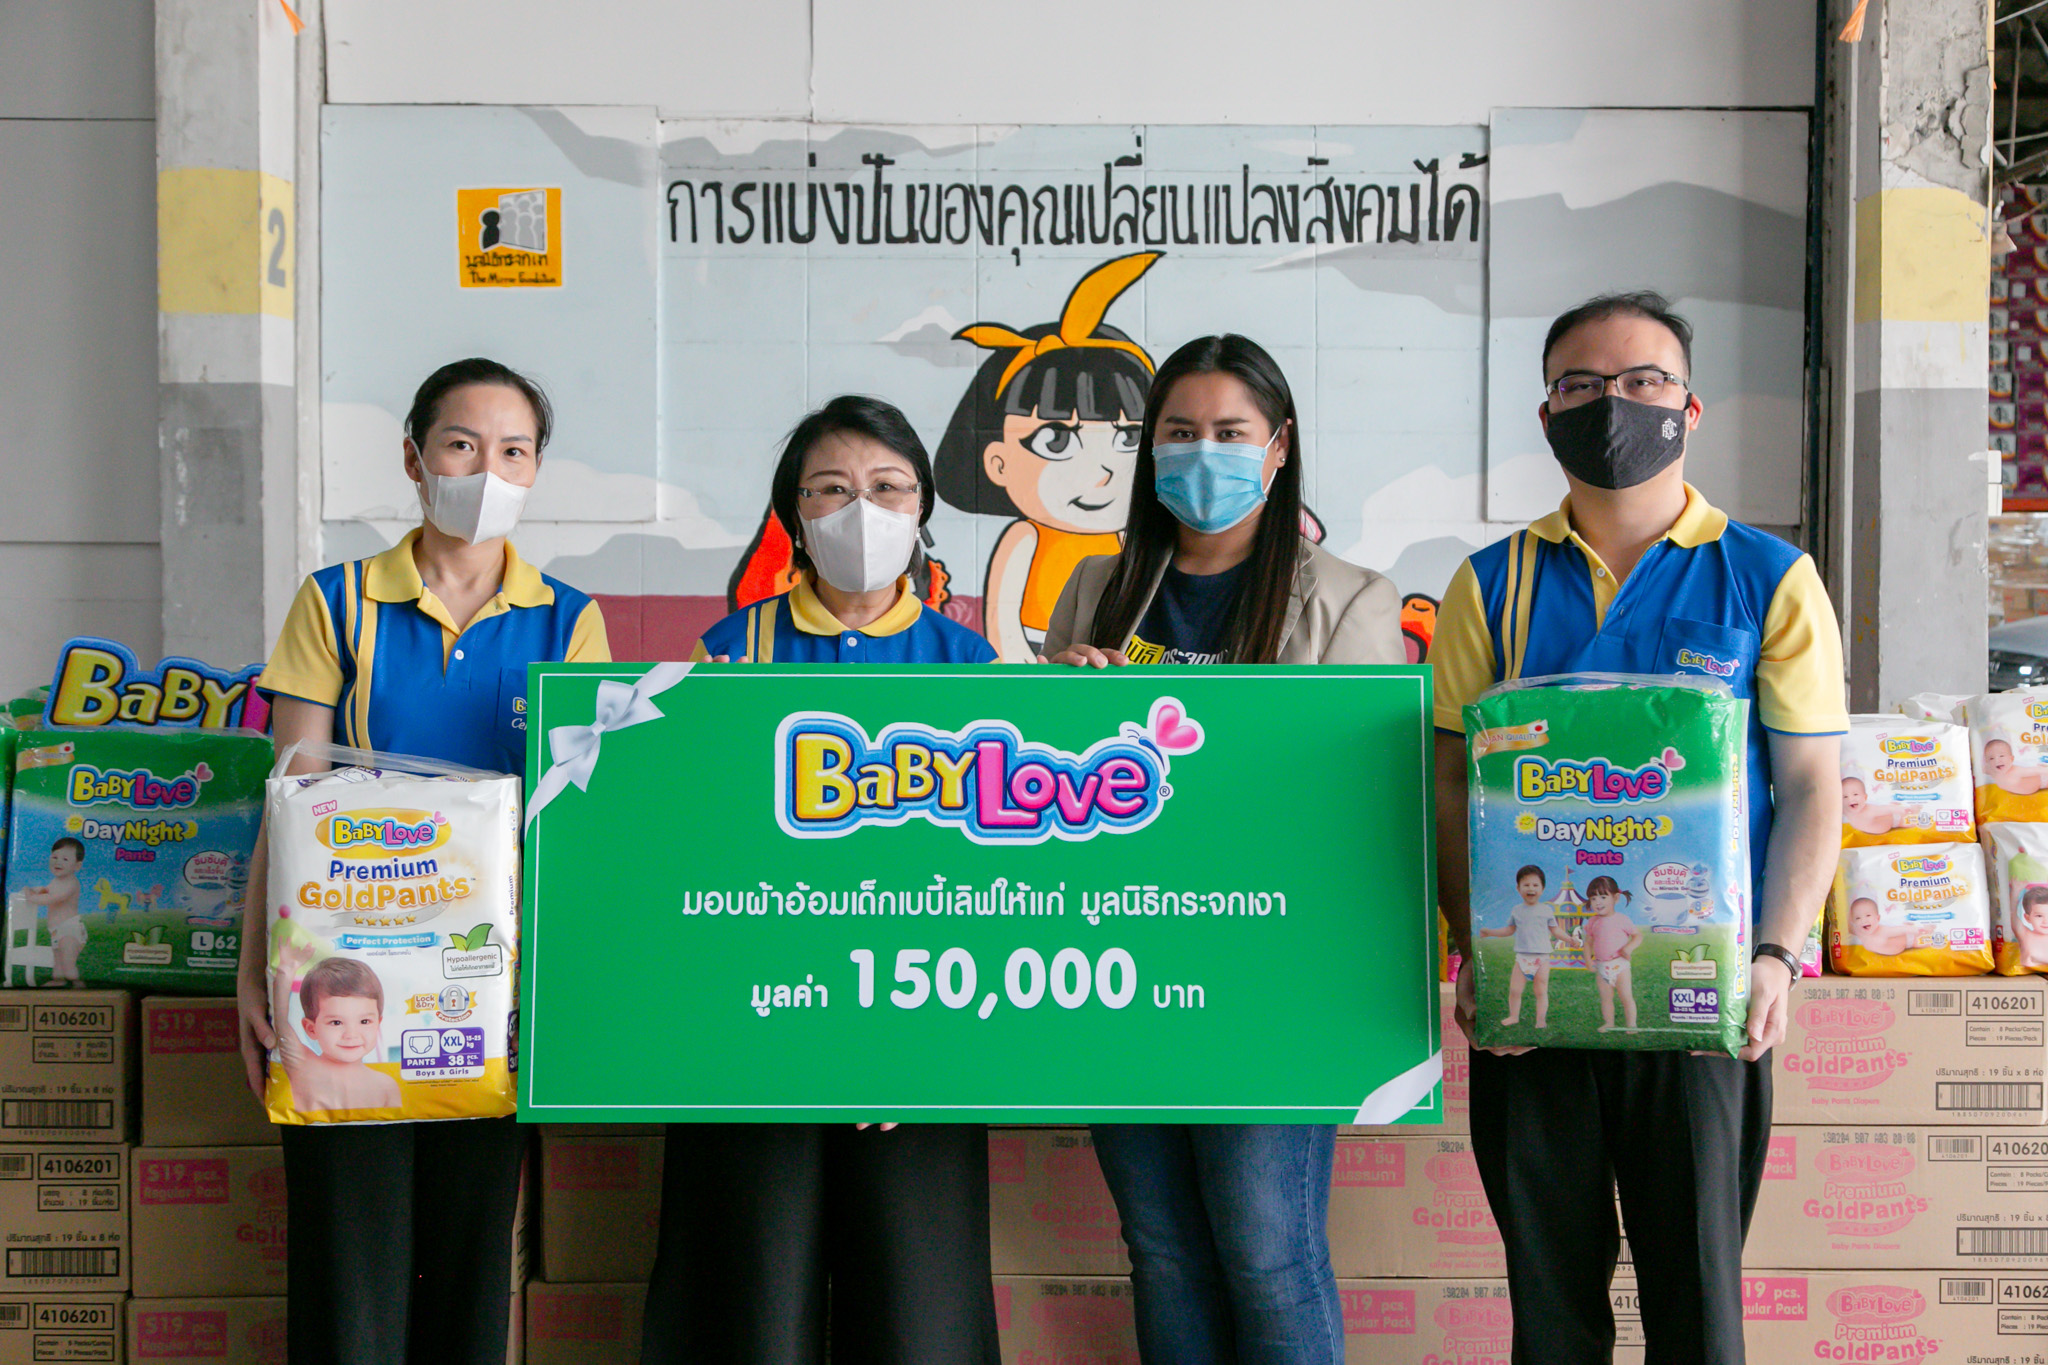 ภาพข่าว: ดีเอสจี มอบผ้าอ้อมสำเร็จรูป เบบี้เลิฟ แก่มูลนิธิกระจกเงา เพื่อช่วยเหลือครอบครัวยากไร้และเด็กด้อยโอกาส ในประเทศไทย